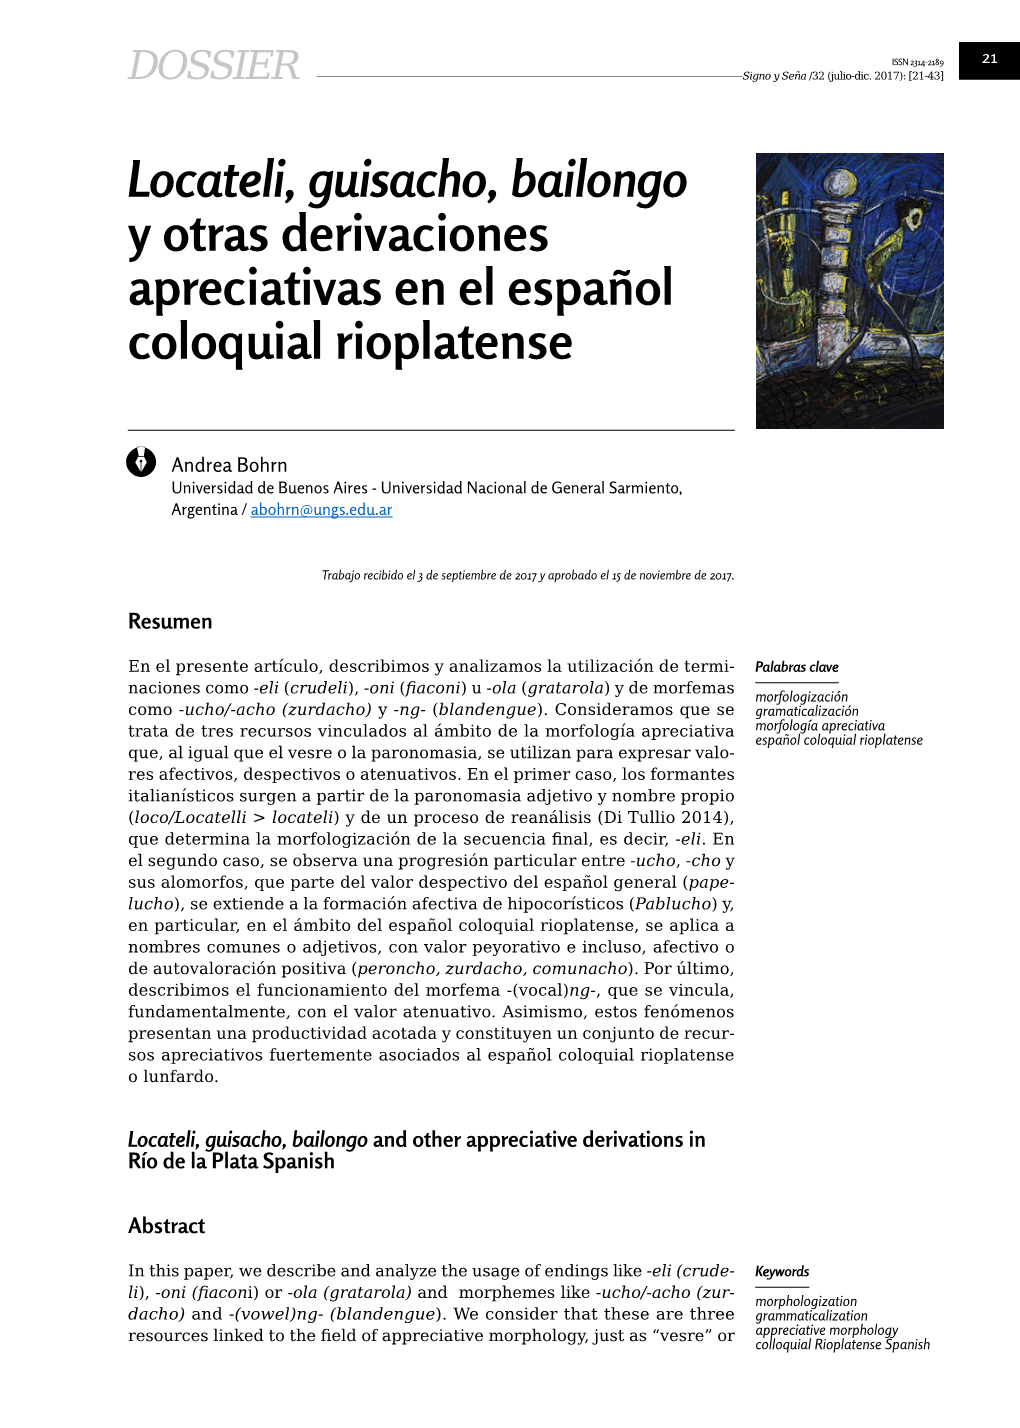 Locateli, Guisacho, Bailongo Y Otras Derivaciones Apreciativas En El Español Coloquial Rioplatense